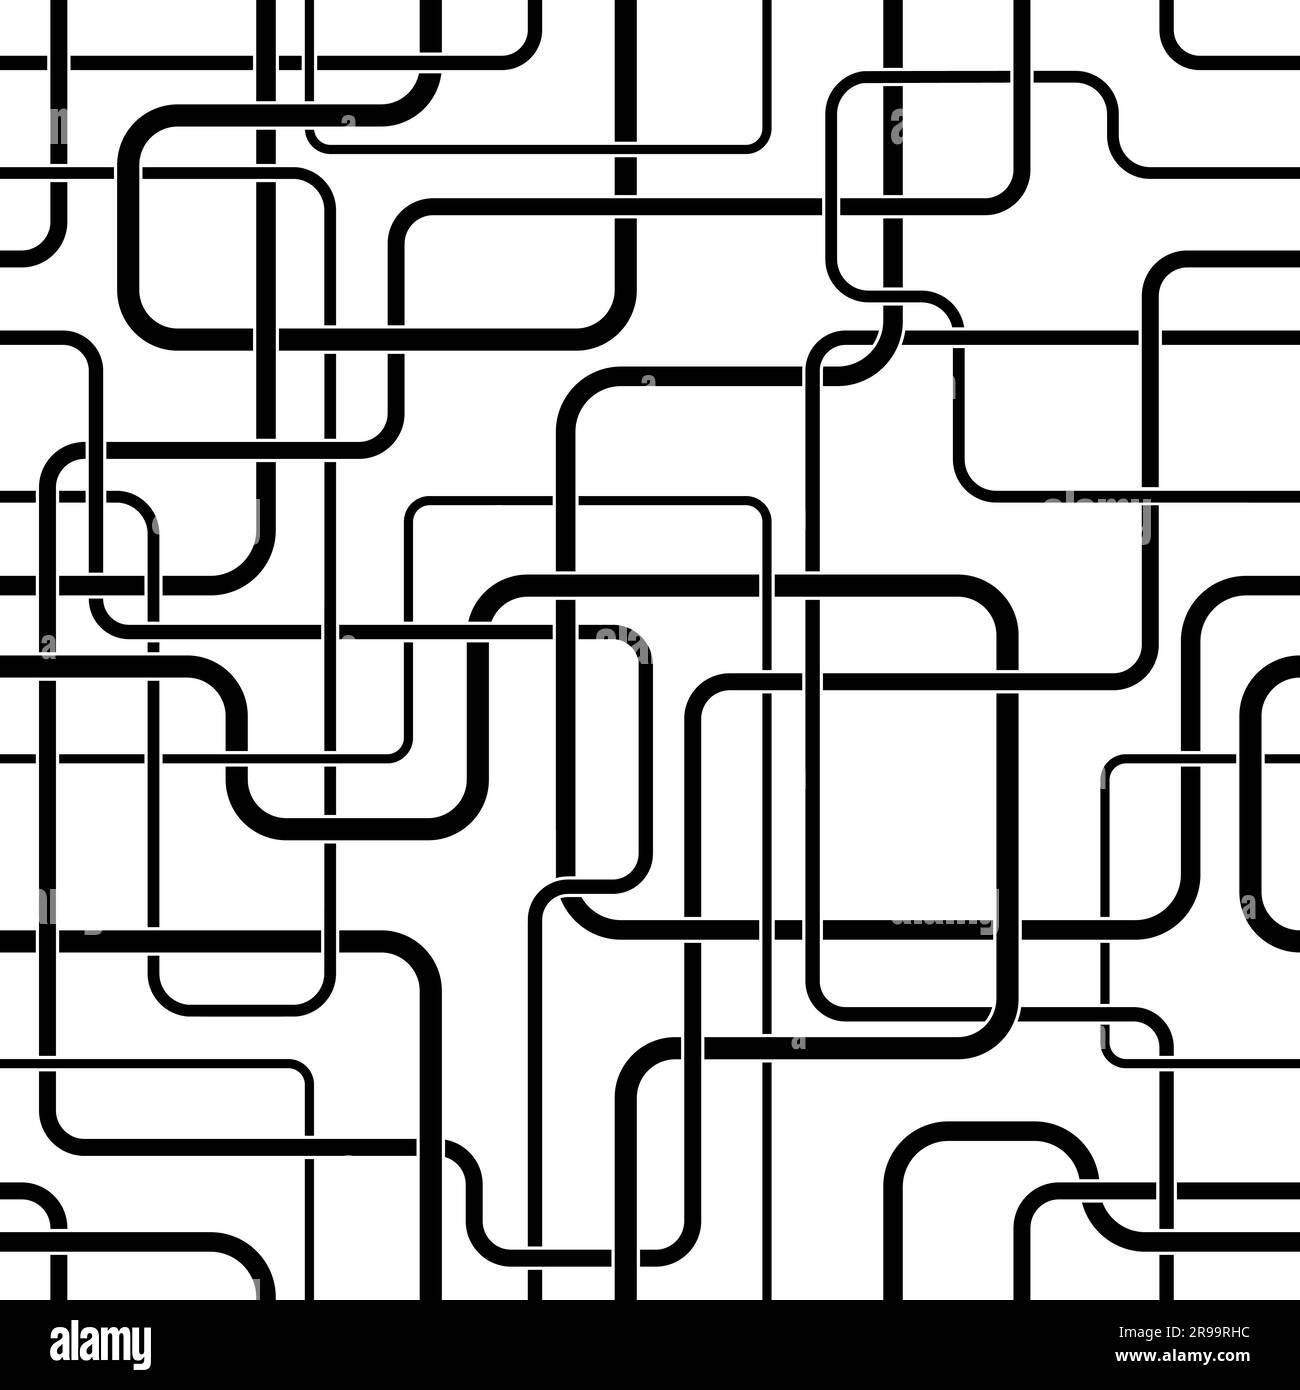 Nahtloses Linienmuster. Sich wiederholende abstrakte schwarze Linien, isoliert auf weißem Hintergrund. Wiederholte geometrische Form für Designdrucke. Monokromes Gitter Stock Vektor